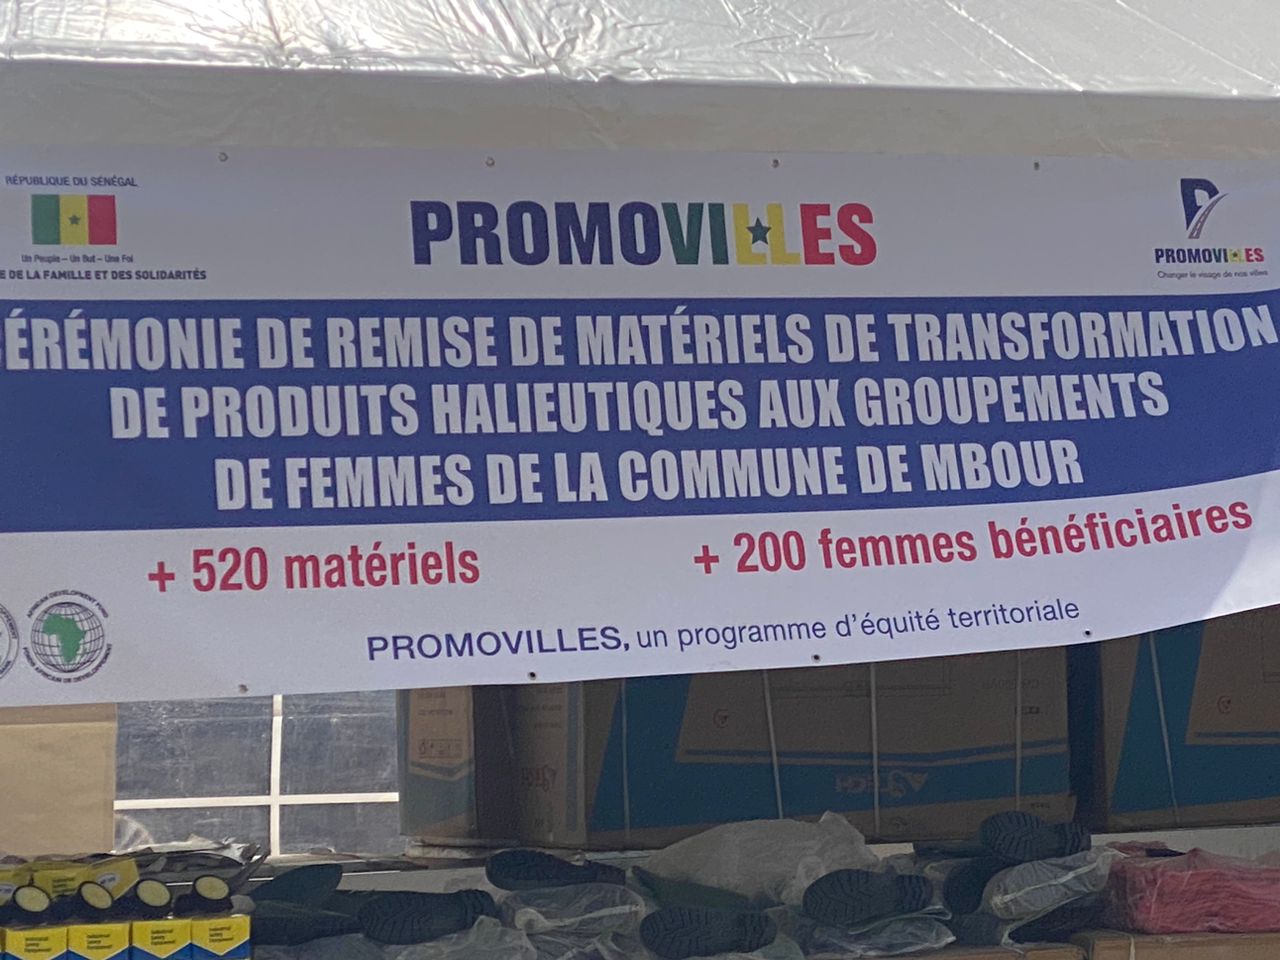 Photos / Mbour : Promovilles remet un lot de matériels aux 200 groupements de femmes de la Commune